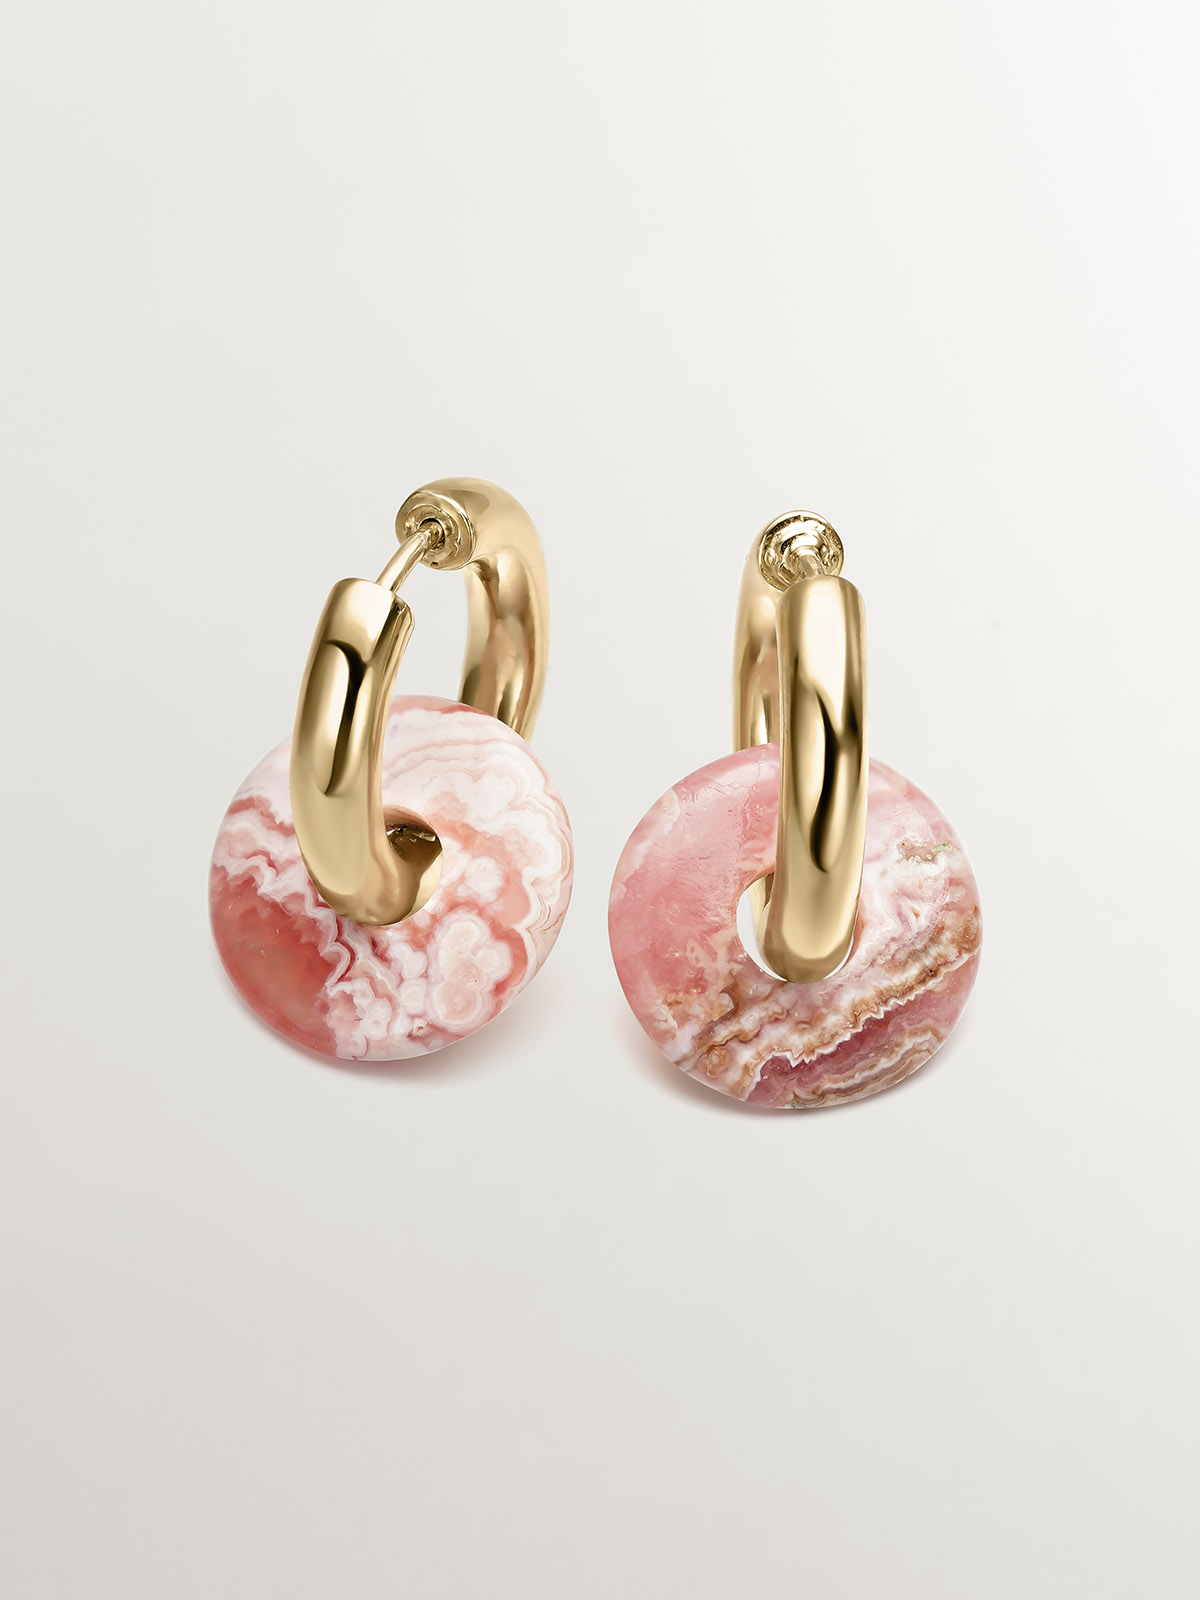 Boucles d'oreilles créoles de taille moyenne en argent 925 plaqué or jaune 18K avec rhodochrosite rose